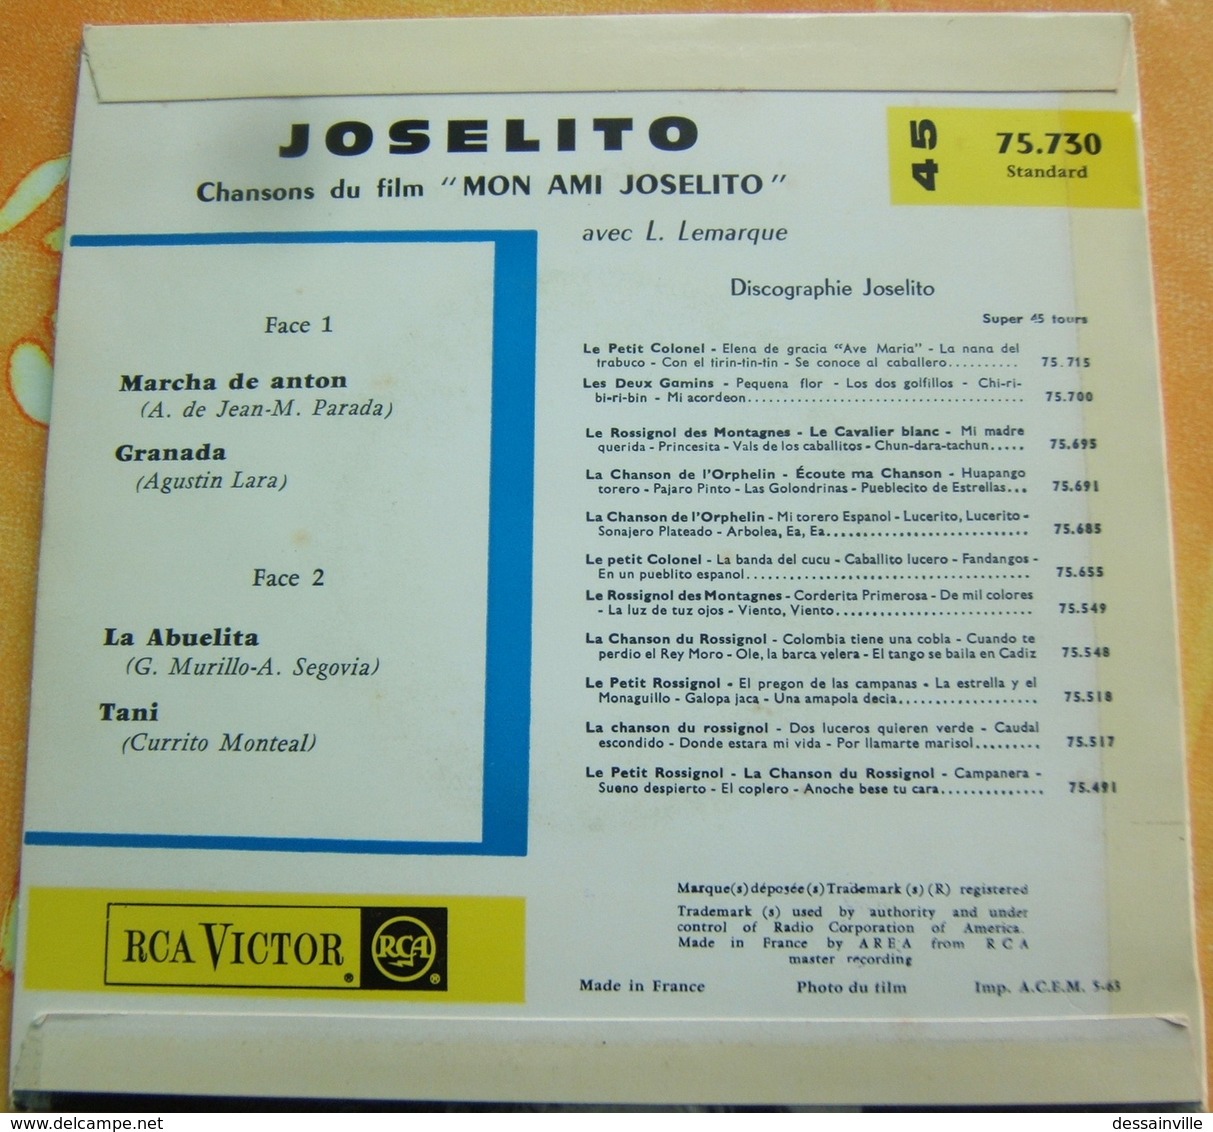 45 Tours - JOSELITO Chansons Du Film (Canciones De La Pelicula) MON AMI JOSELITO - RCA 75.730 - Sonstige - Spanische Musik